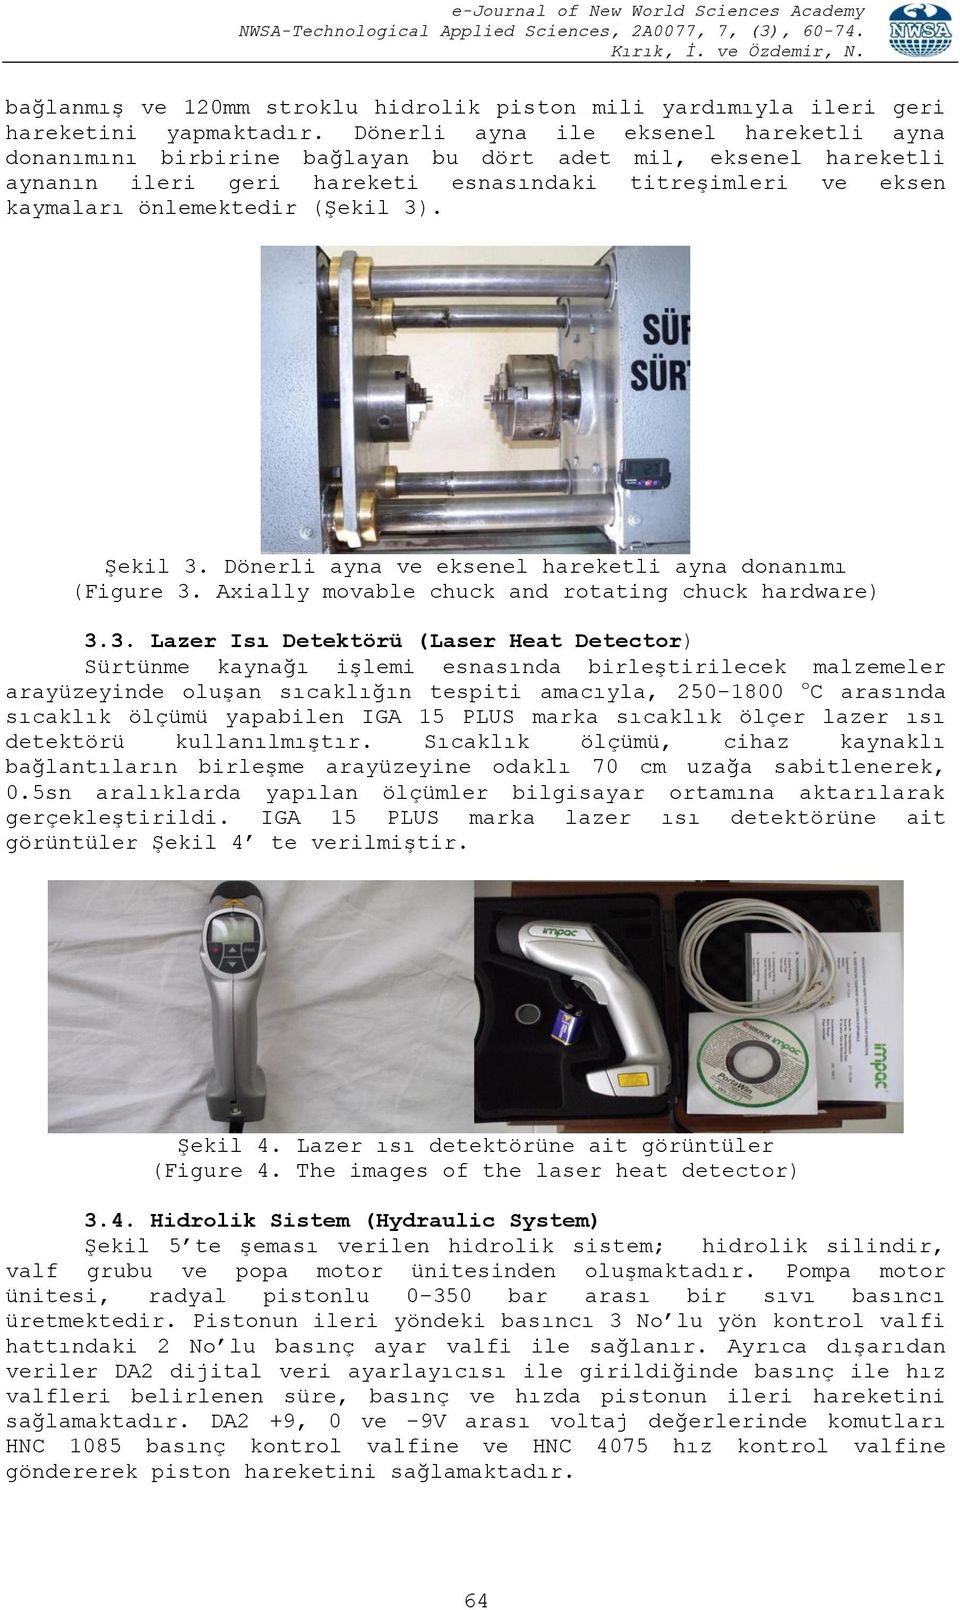 3). Şekil 3. Dönerli ayna ve eksenel hareketli ayna donanımı (Figure 3. Axially movable chuck and rotating chuck hardware) 3.3. Lazer Isı Detektörü (Laser Heat Detector) Sürtünme kaynağı işlemi